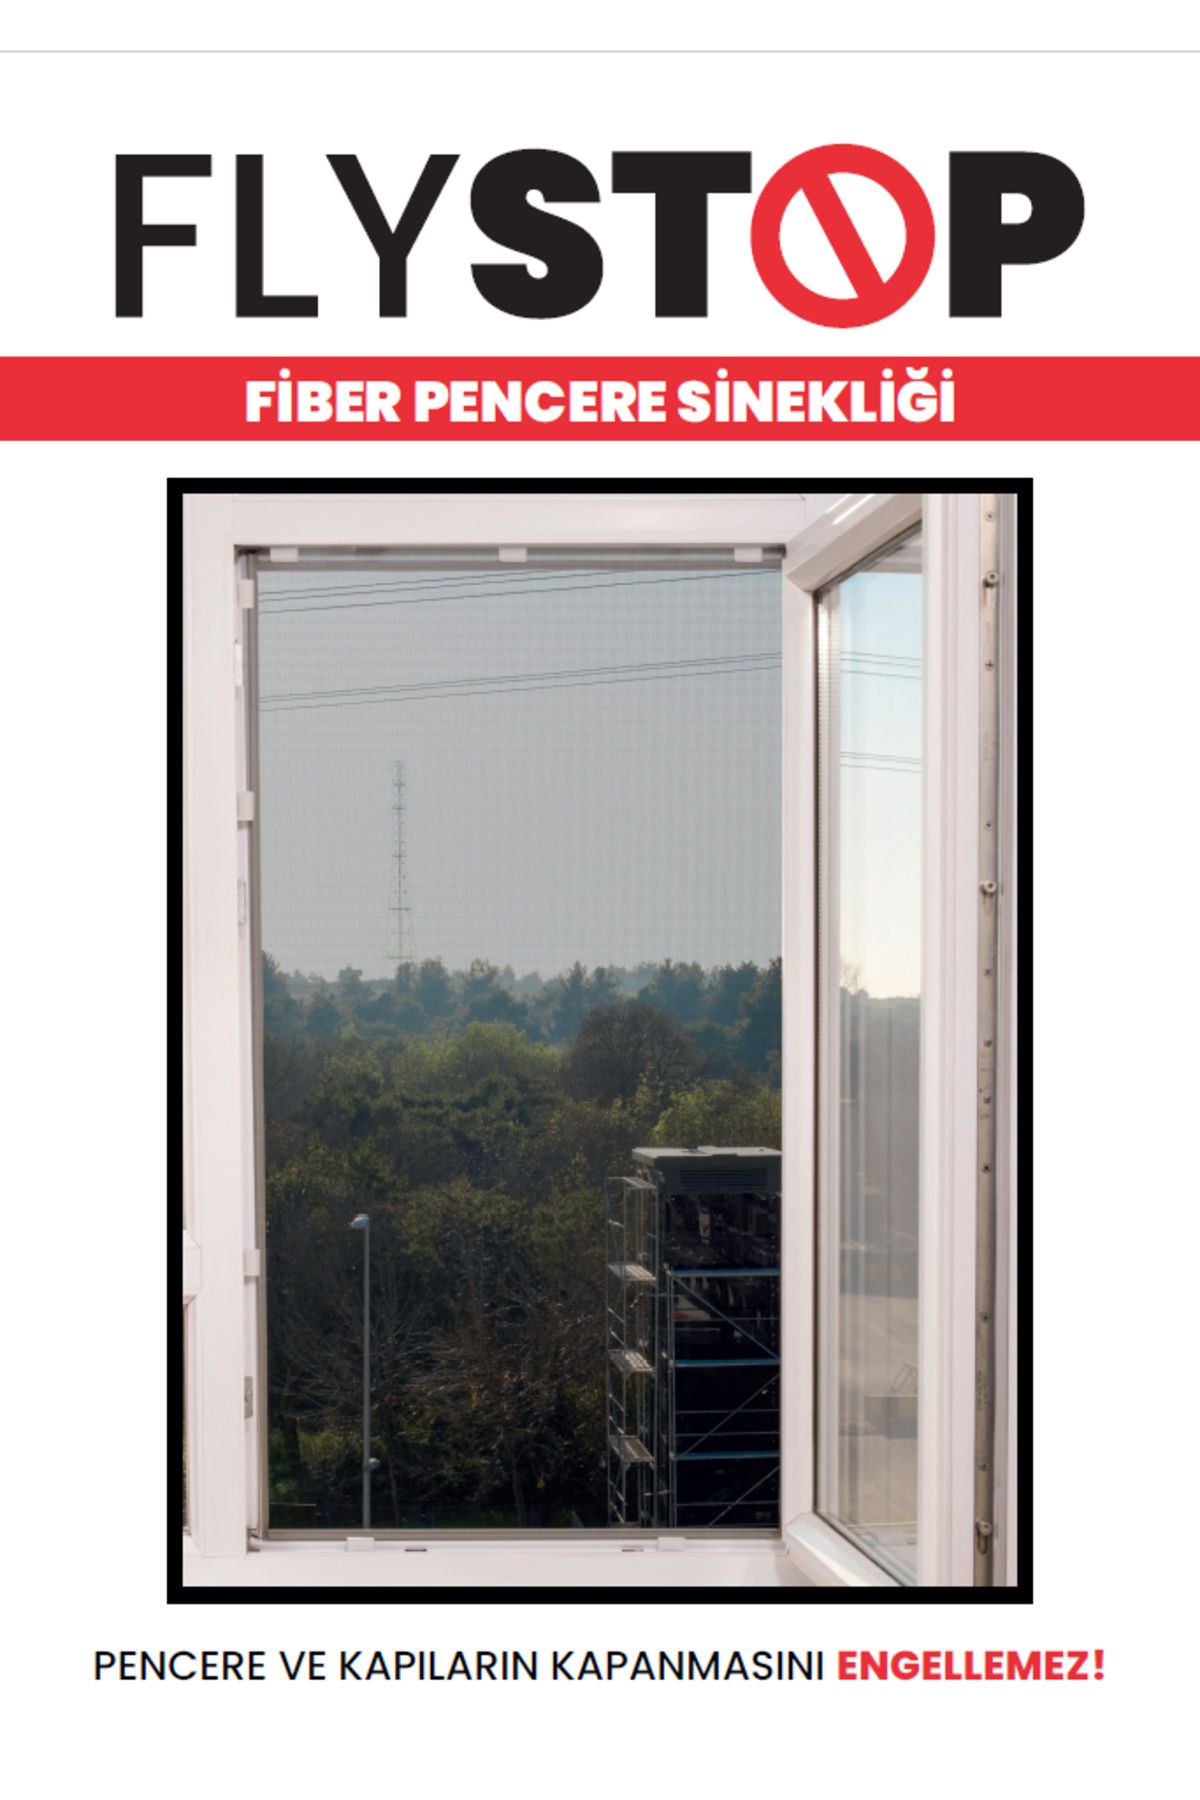 KeskinPazarlama Flystop Aparatlı Fiberglass Pencere Sinekliği 75x125 cm